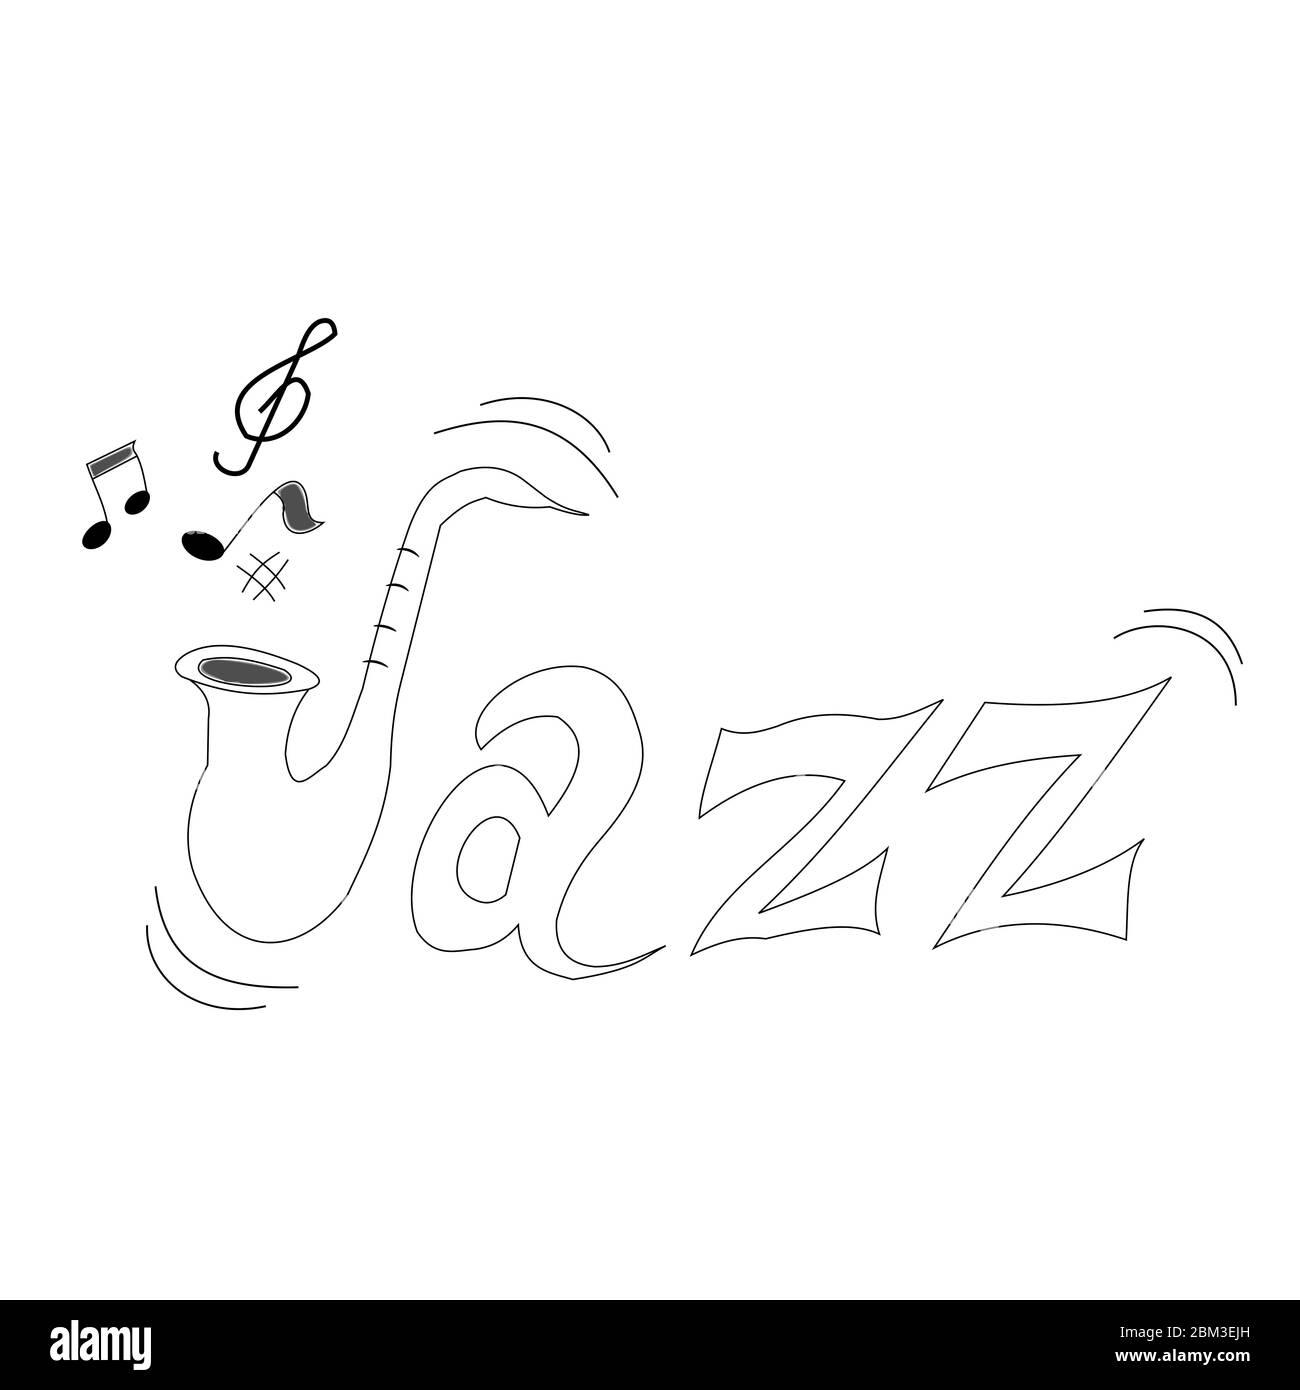 Lettres dessinées à la main pour le mot jazz pour la journée internationale de la musique jazz Banque D'Images